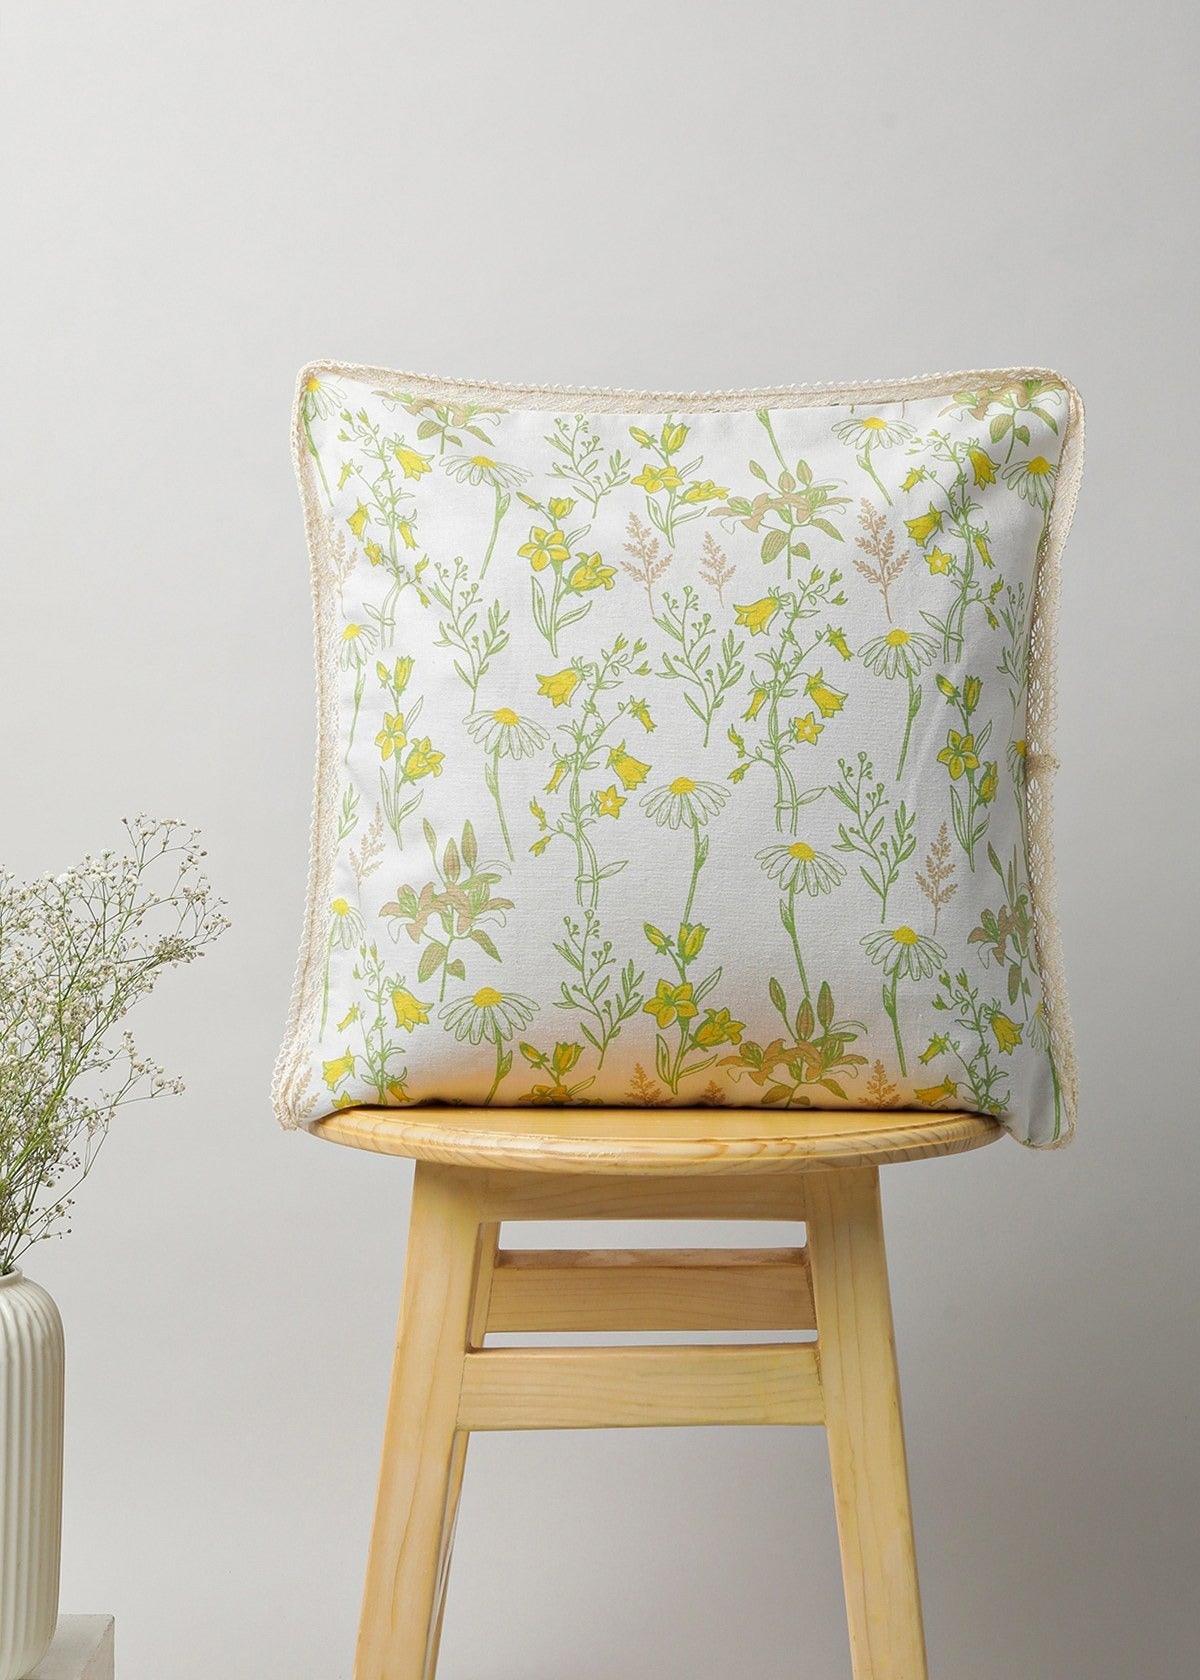 Tulip garden 100% cotton customizable floral cushion cover for sofa - Multicolor